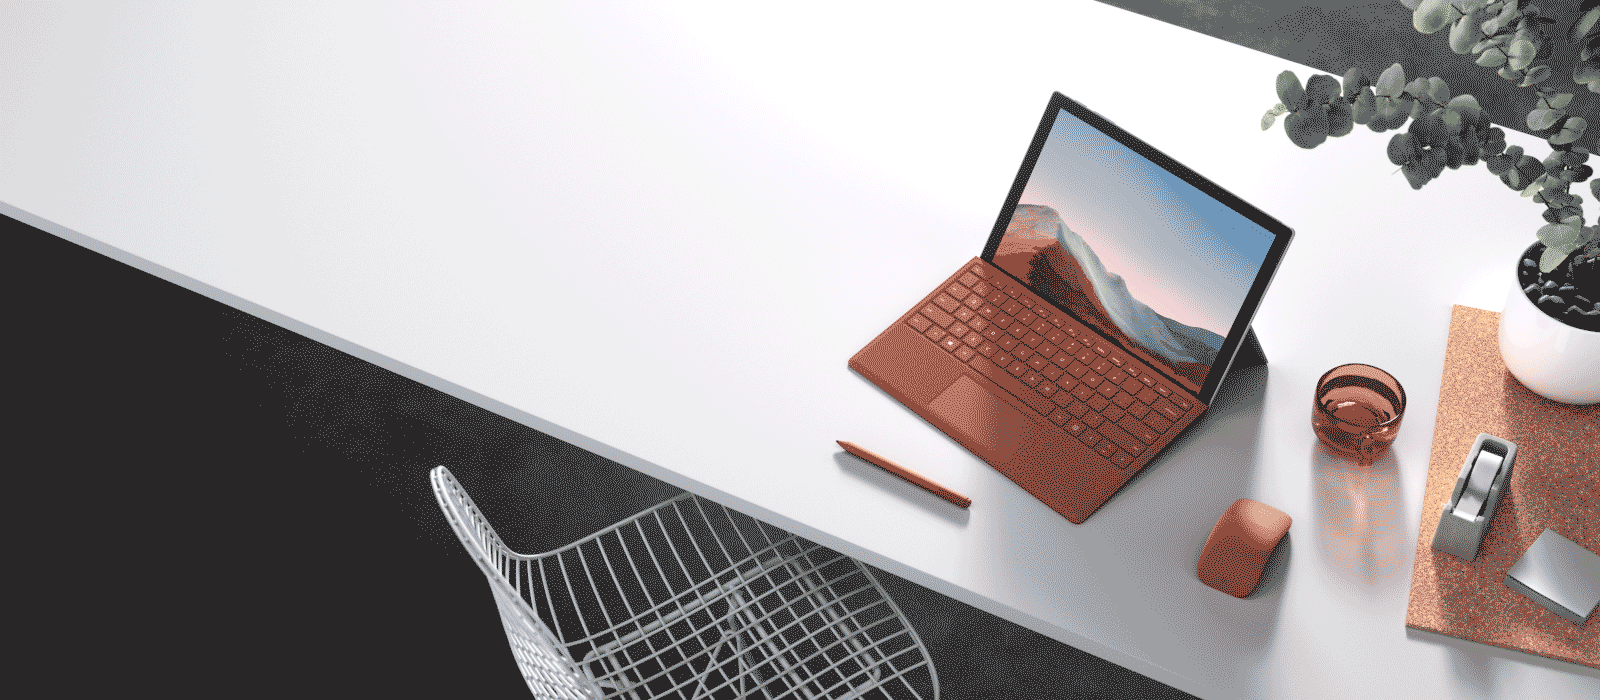 Une Surface Pro 7 Plus avec un Type Cover rouge coquelicot est posée sur un bureau avec d'autres accessoires Surface